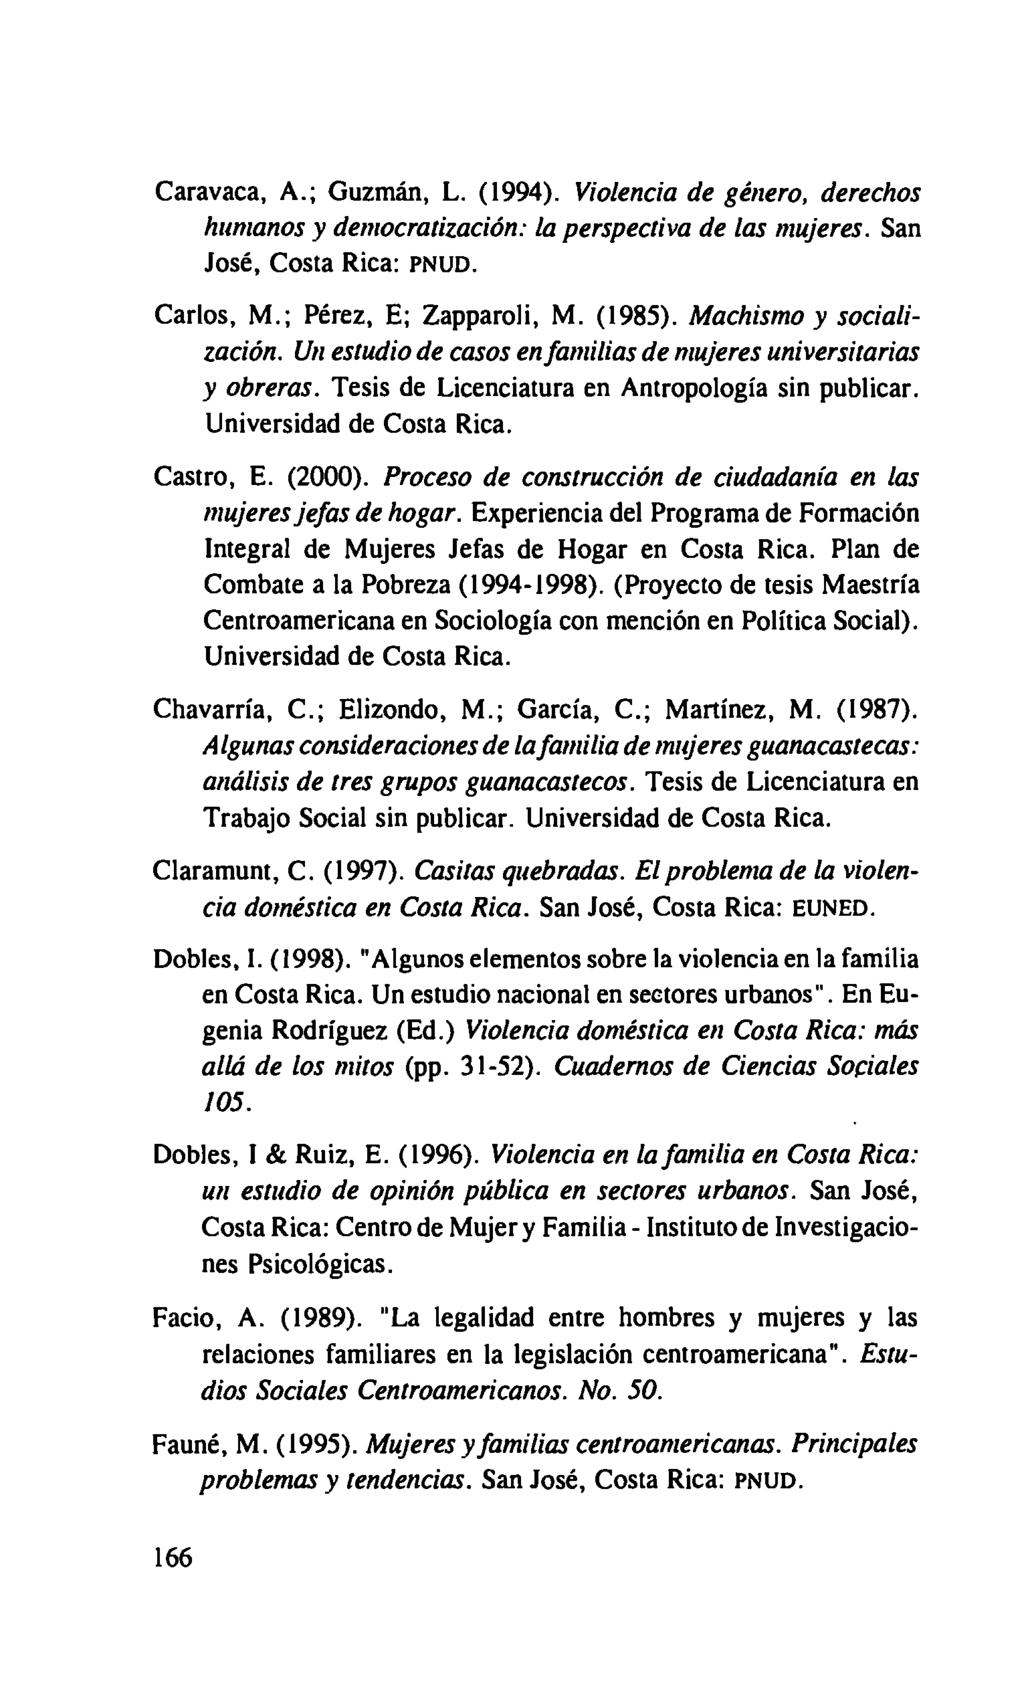 Caravaca, A.; Guzmán, L. (1994). Violencia de género, derechos humanos y democratización: la perspectiva de las mujeres. San José, Costa Rica: PNUD. Carlos, M.; Pérez, E; Zapparoli, M. (1985).